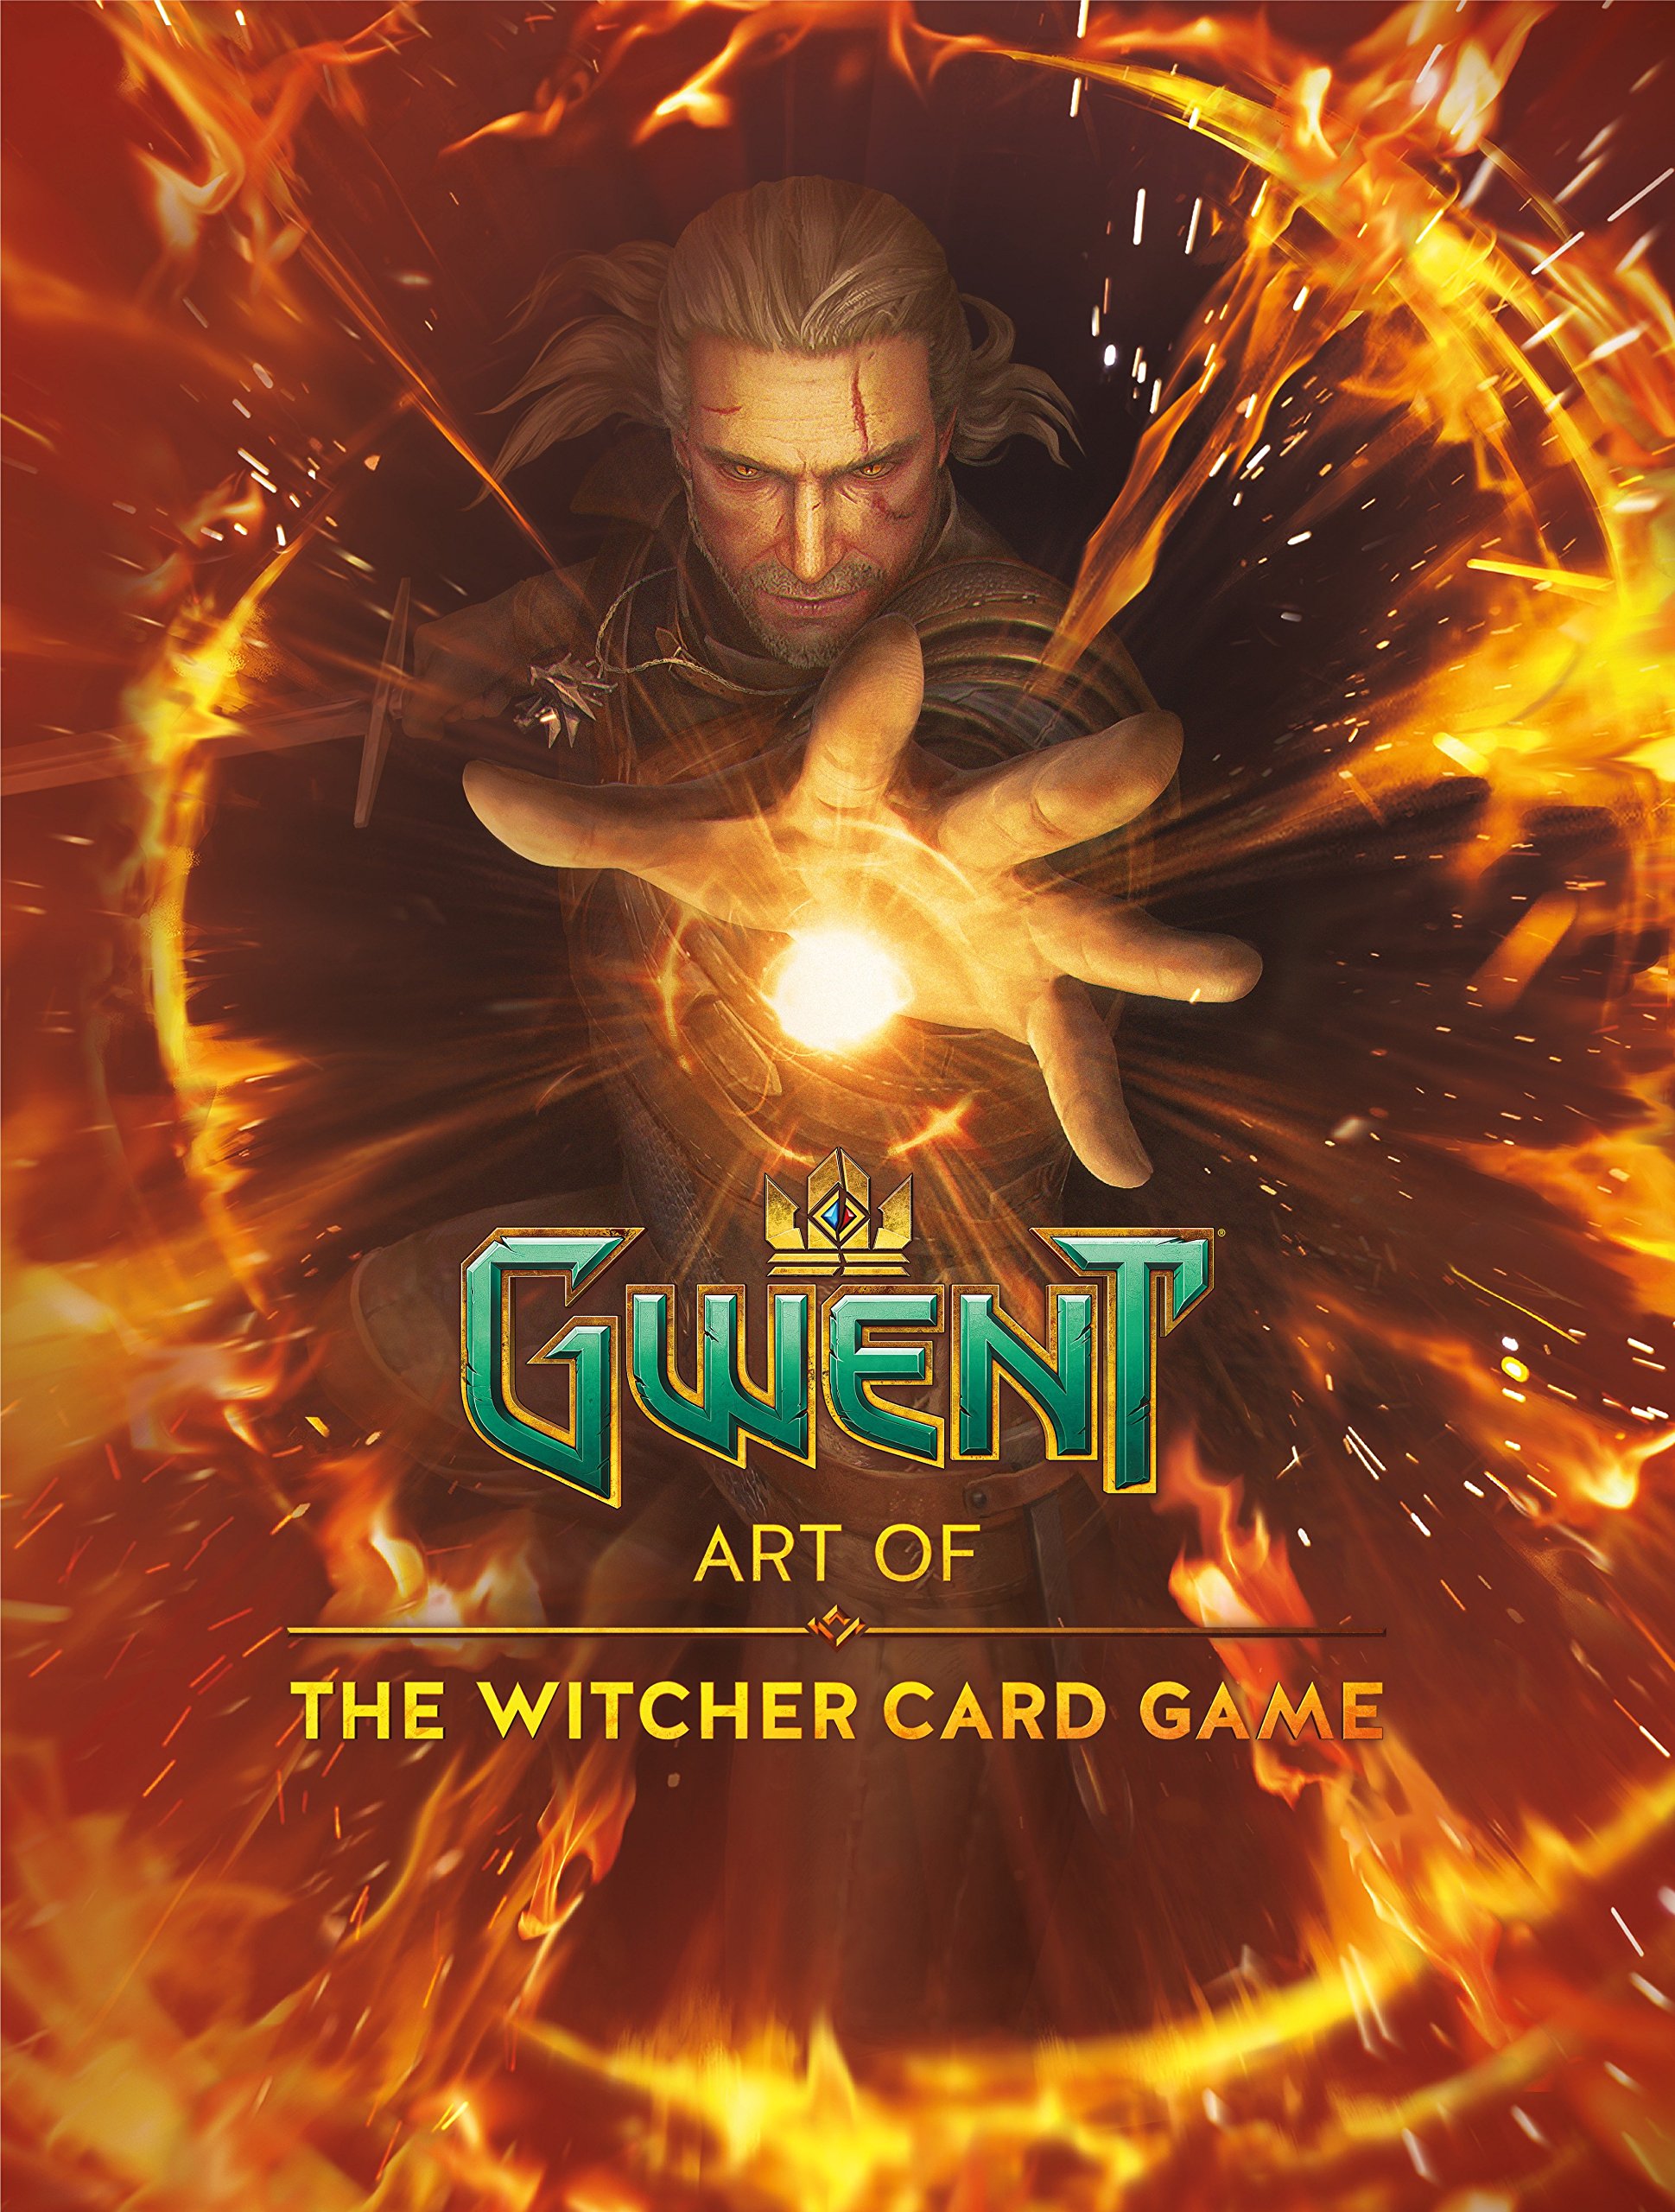 Mua Gwent Art of The Witcher Card Game The Gwent Gallery Collection trên Amazon Đức chính hãng